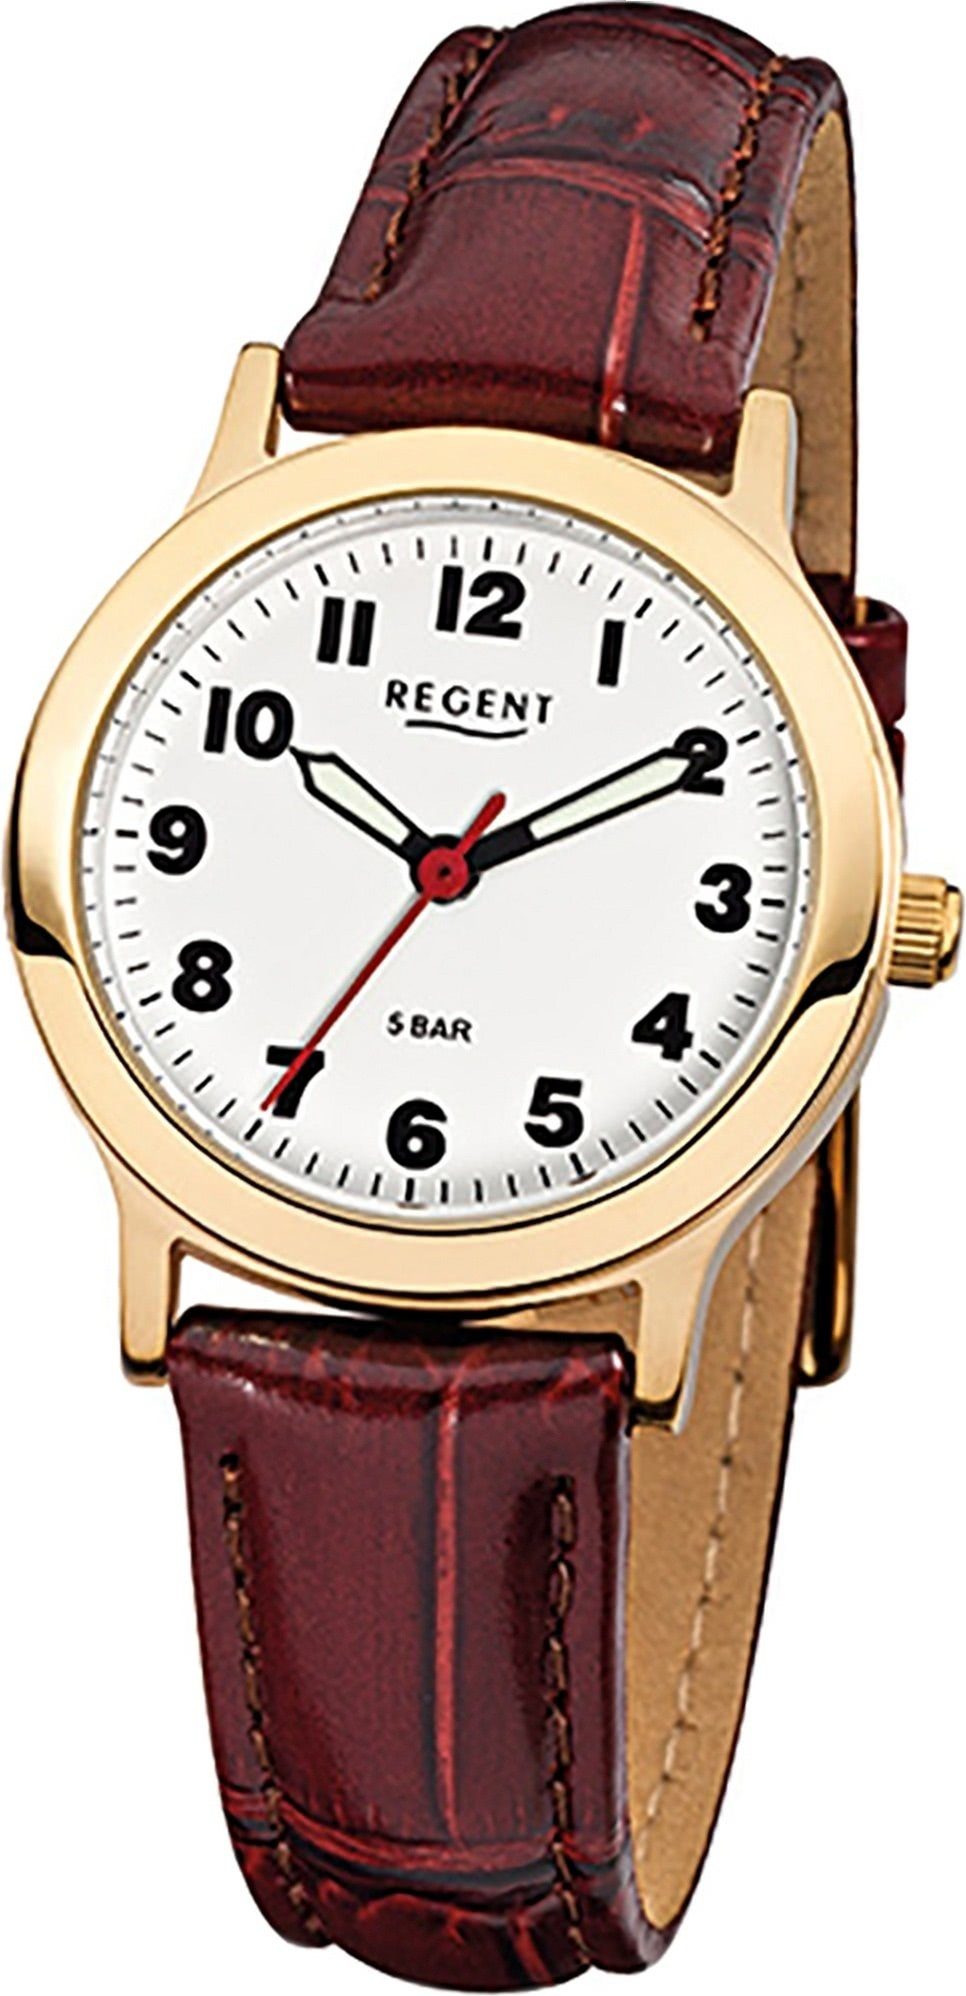 Regent Quarzuhr Regent Leder Damen Uhr F-825 Quarzuhr, Damenuhr Lederarmband braun, rundes Gehäuse, klein (ca. 28mm)